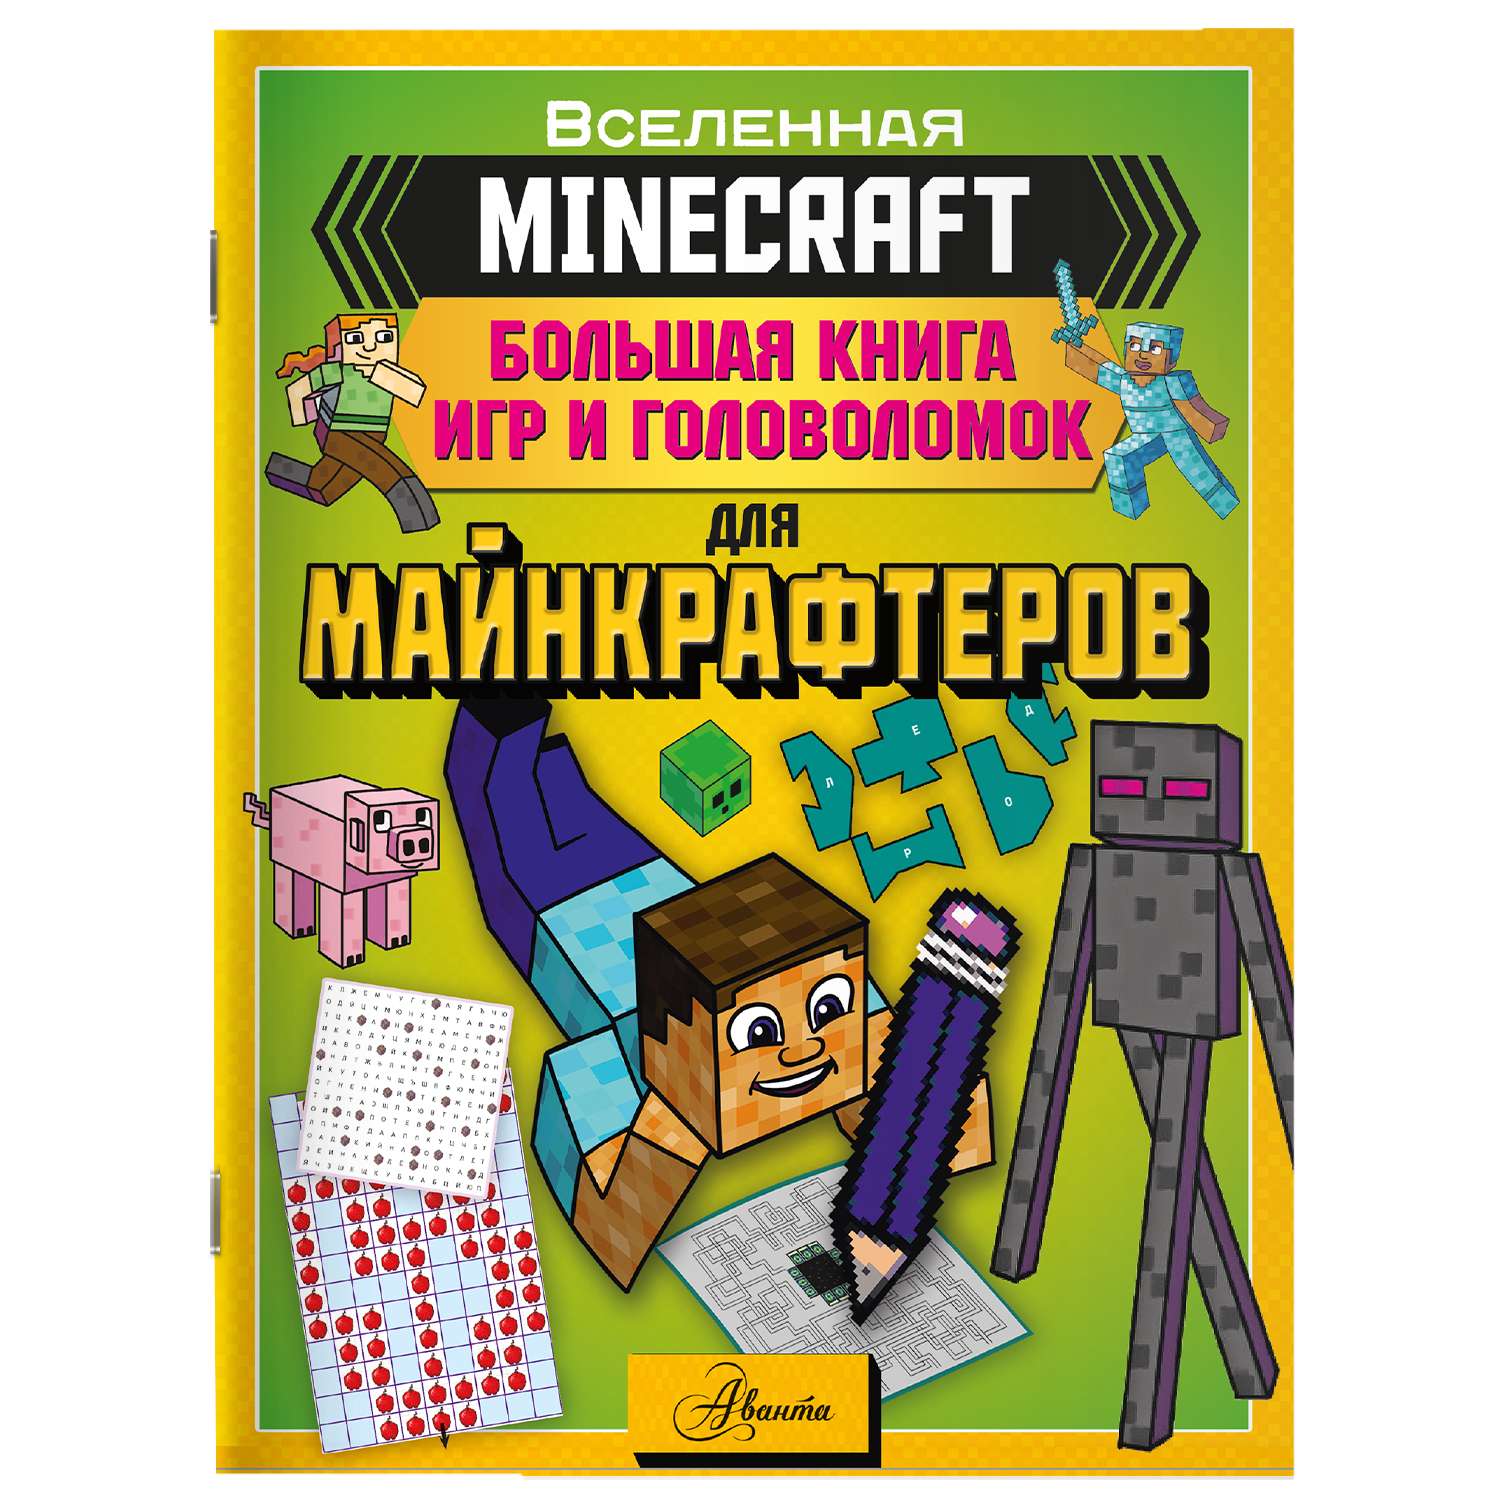 Книга Minecraft Большая книга игр и головоломок для майнкрафтеров - фото 1